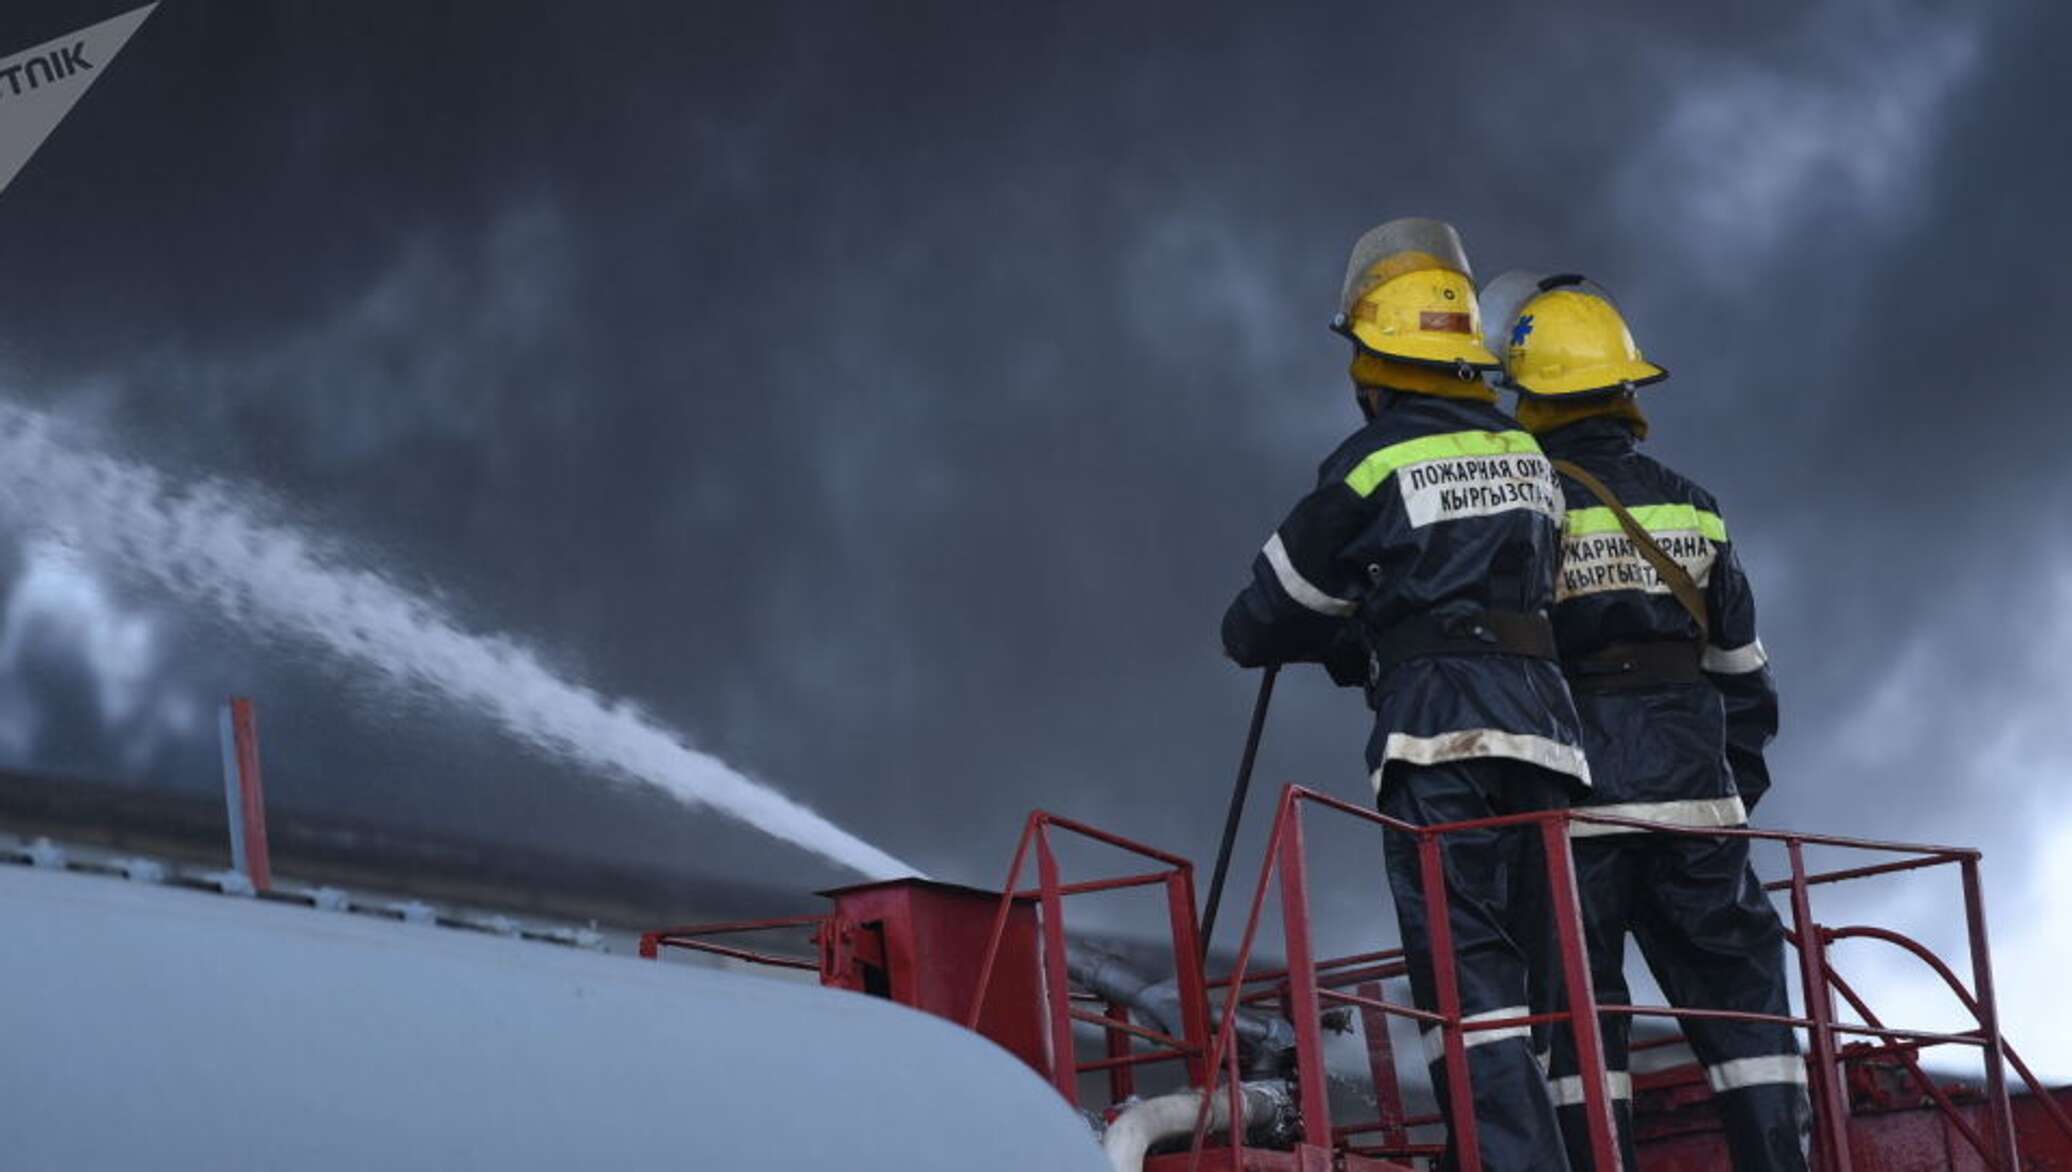 Рынки, вокзалы и элеваторы будут обязаны создавать противопожарные службы — МЧС КР